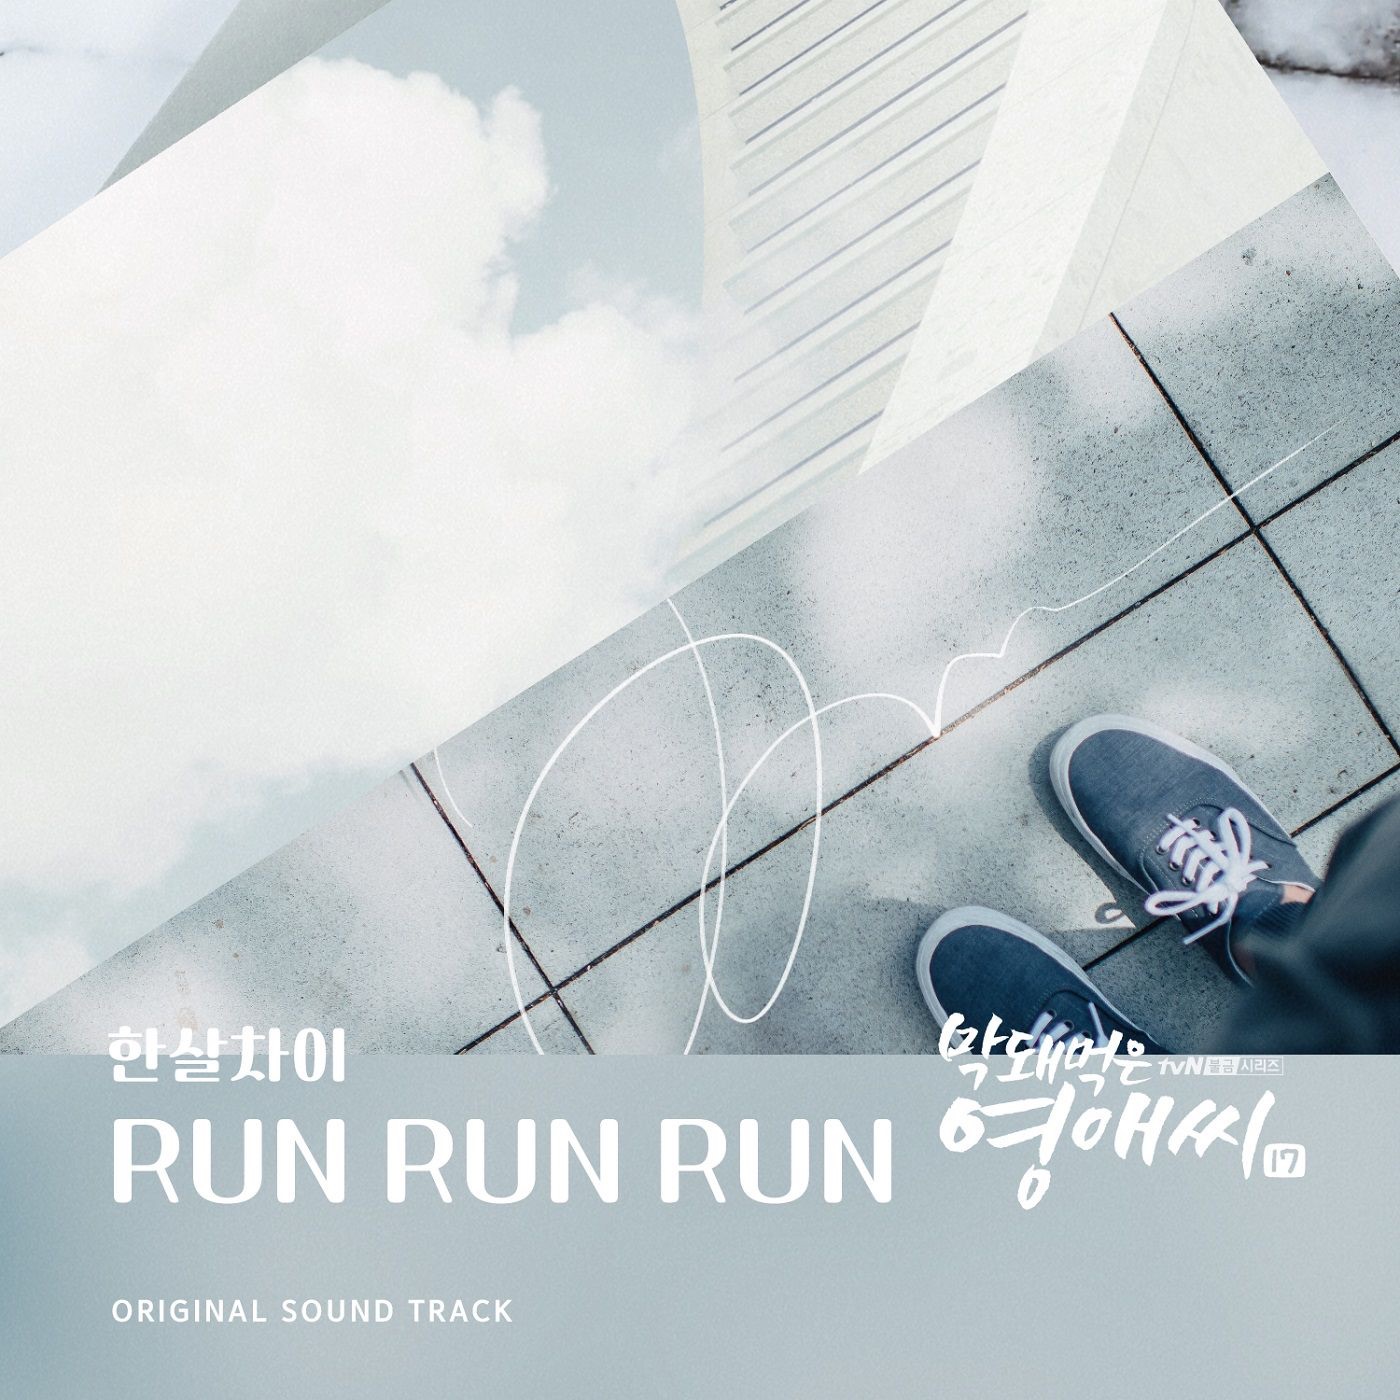 Вторник Run Run Run обложка. Run soundtrack